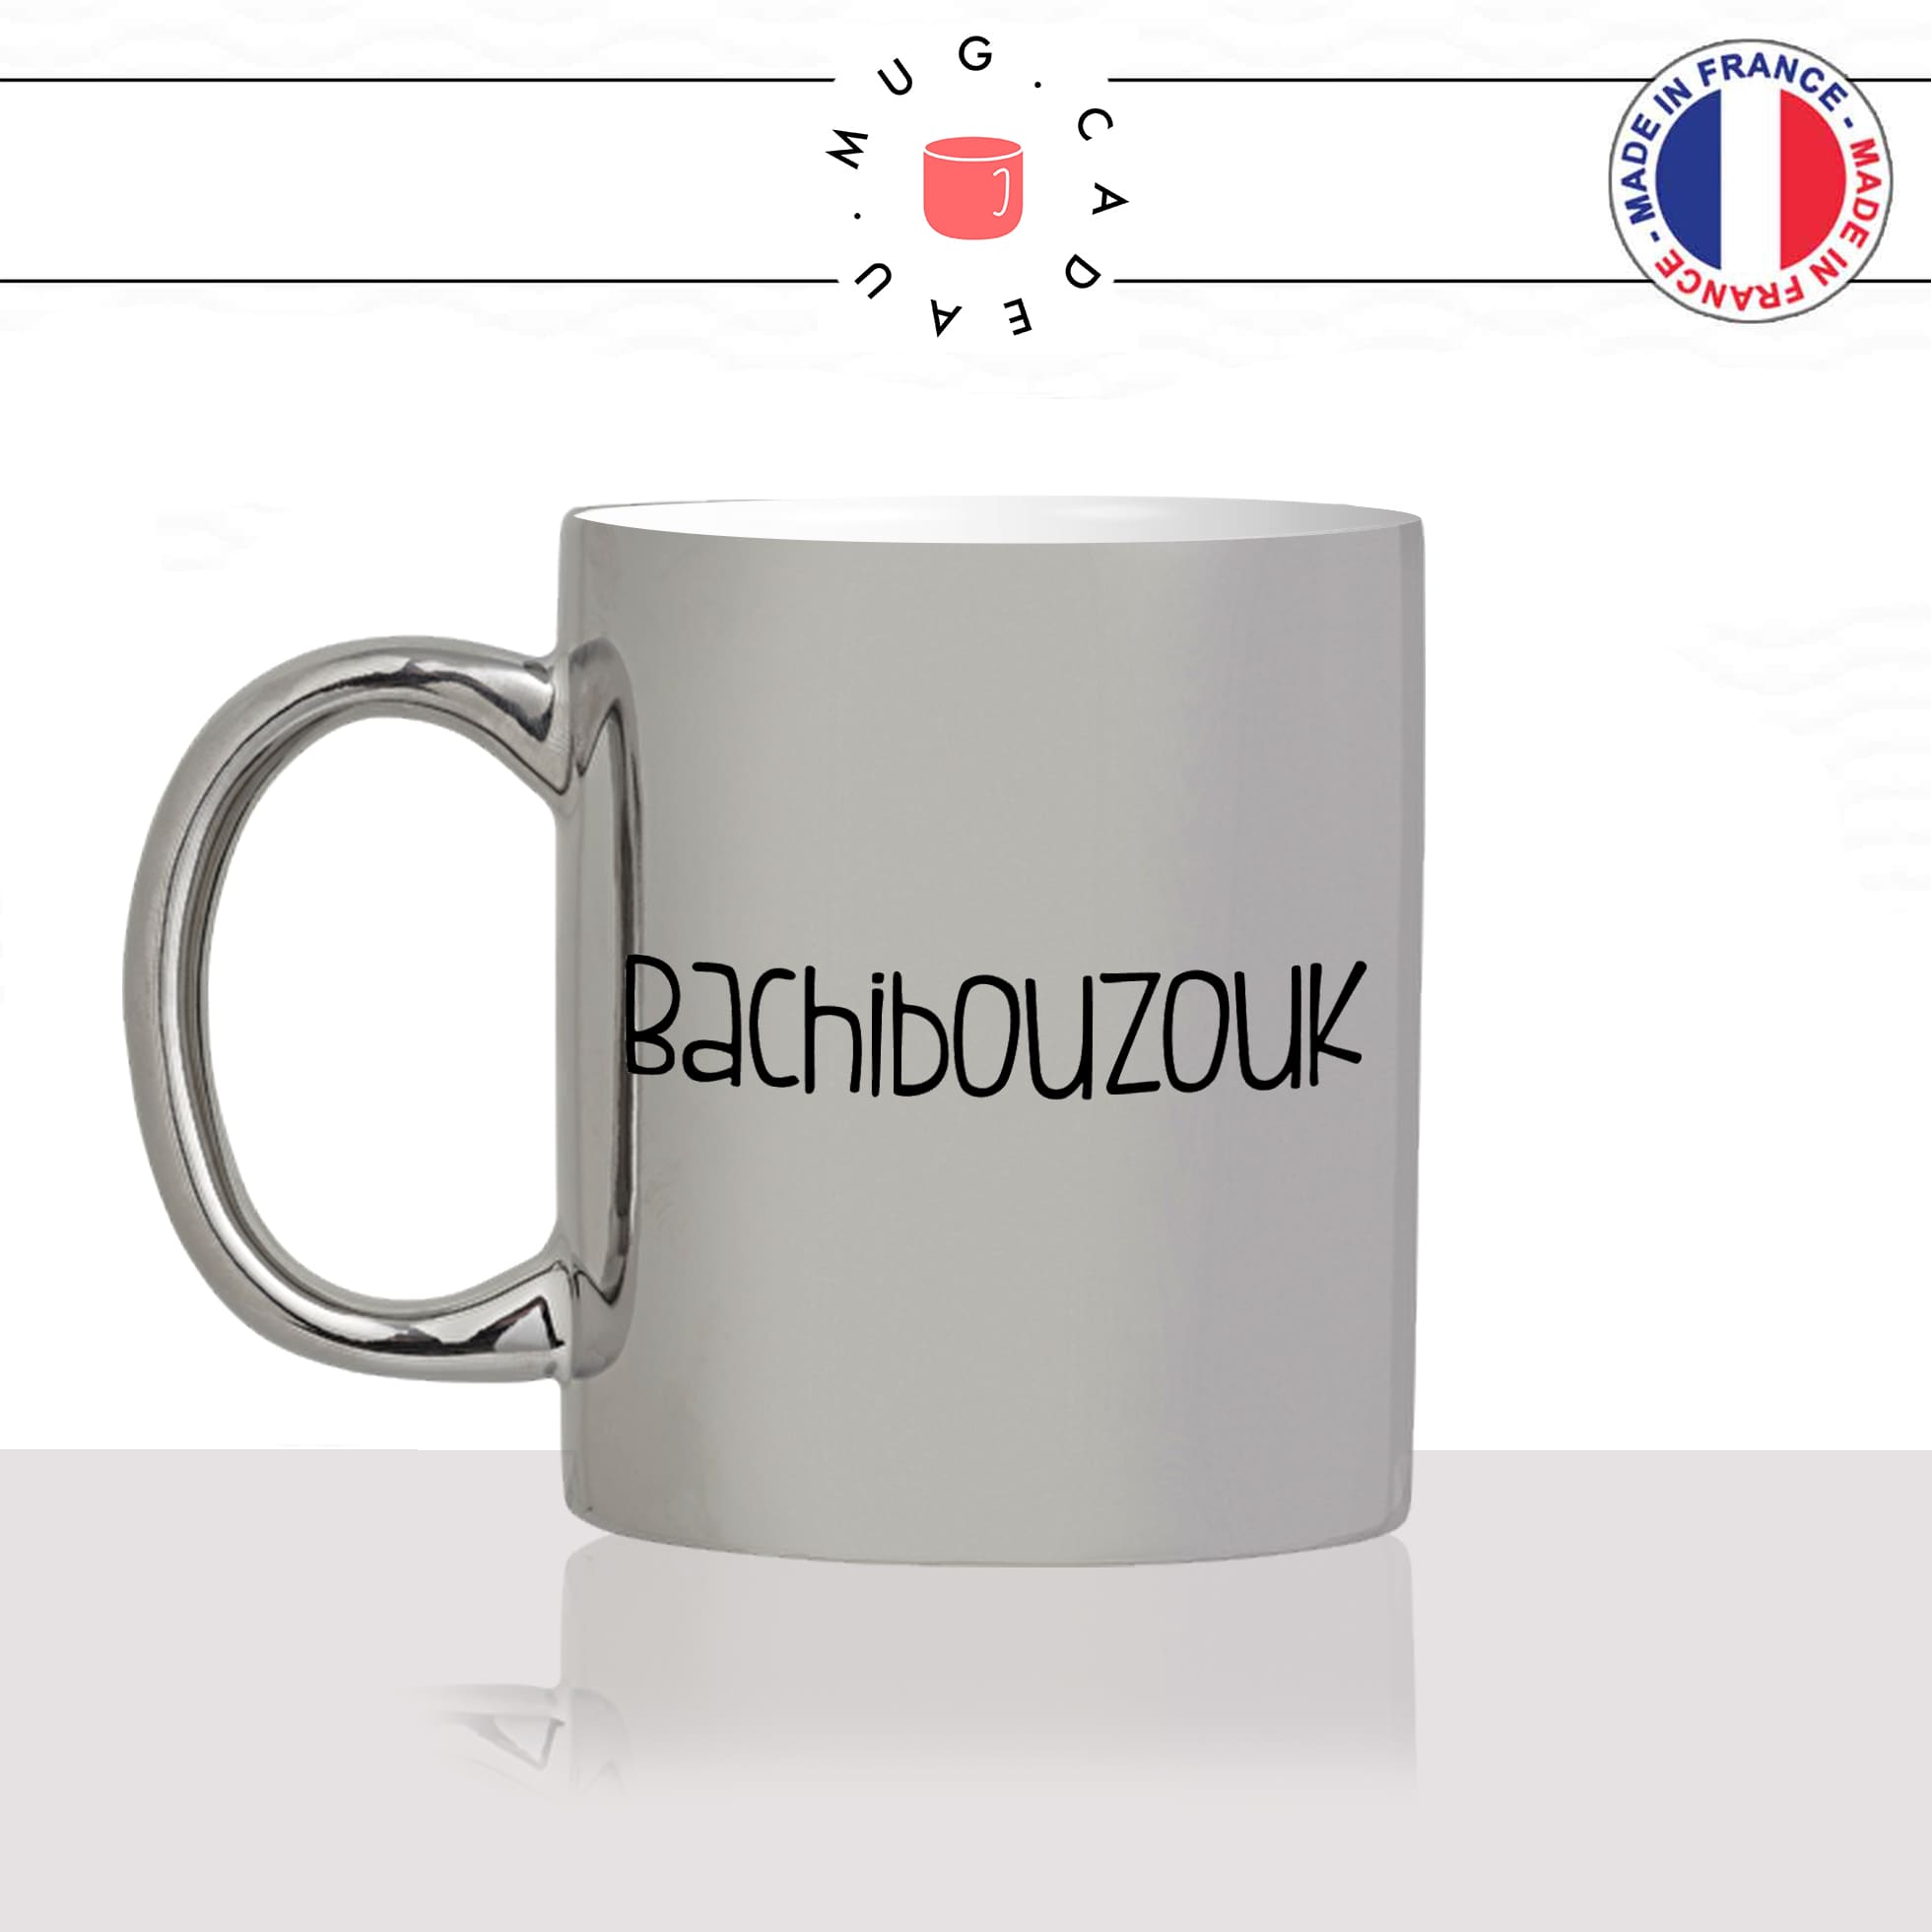 mug-tasse-argenté-argent-gris-silver-unique-bachibouzouk-tintin-capitaine-hadock-homme-femme-humour-fun-cool-idée-cadeau-original